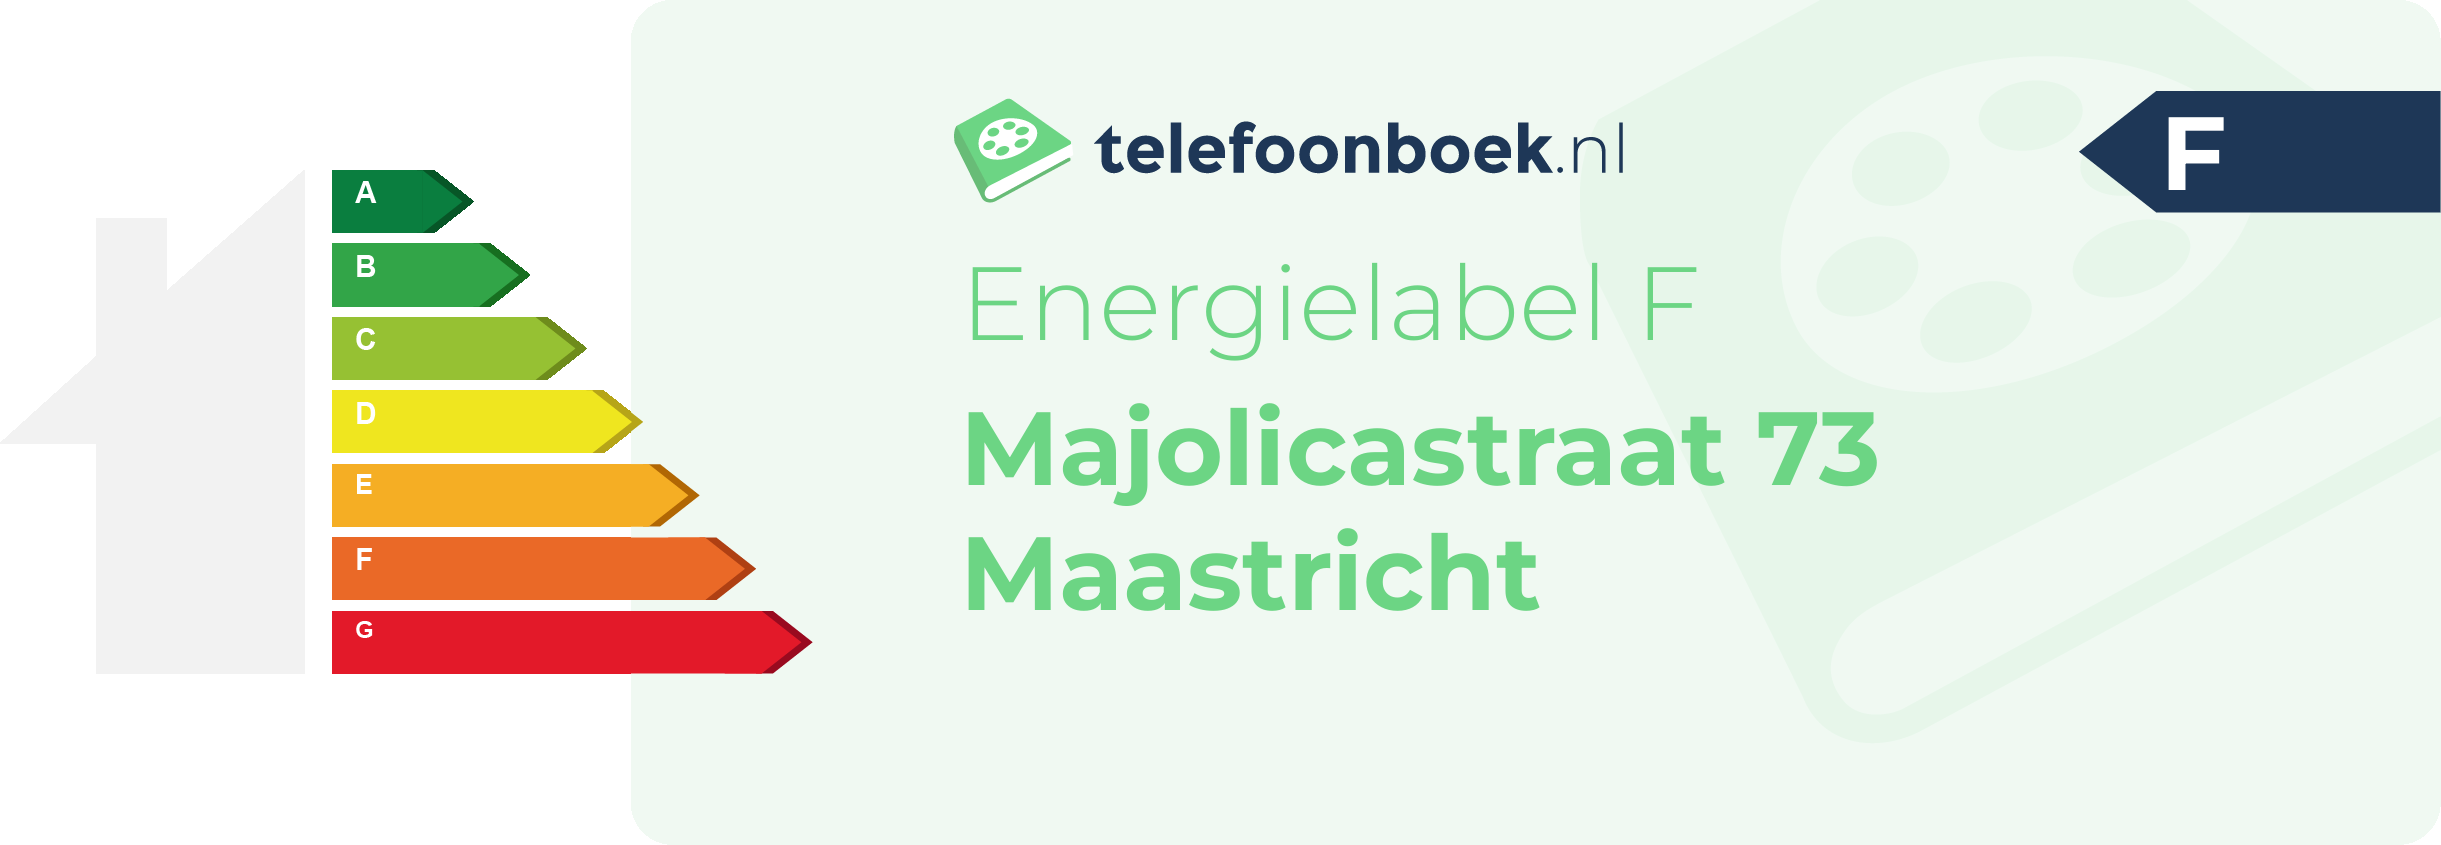 Energielabel Majolicastraat 73 Maastricht